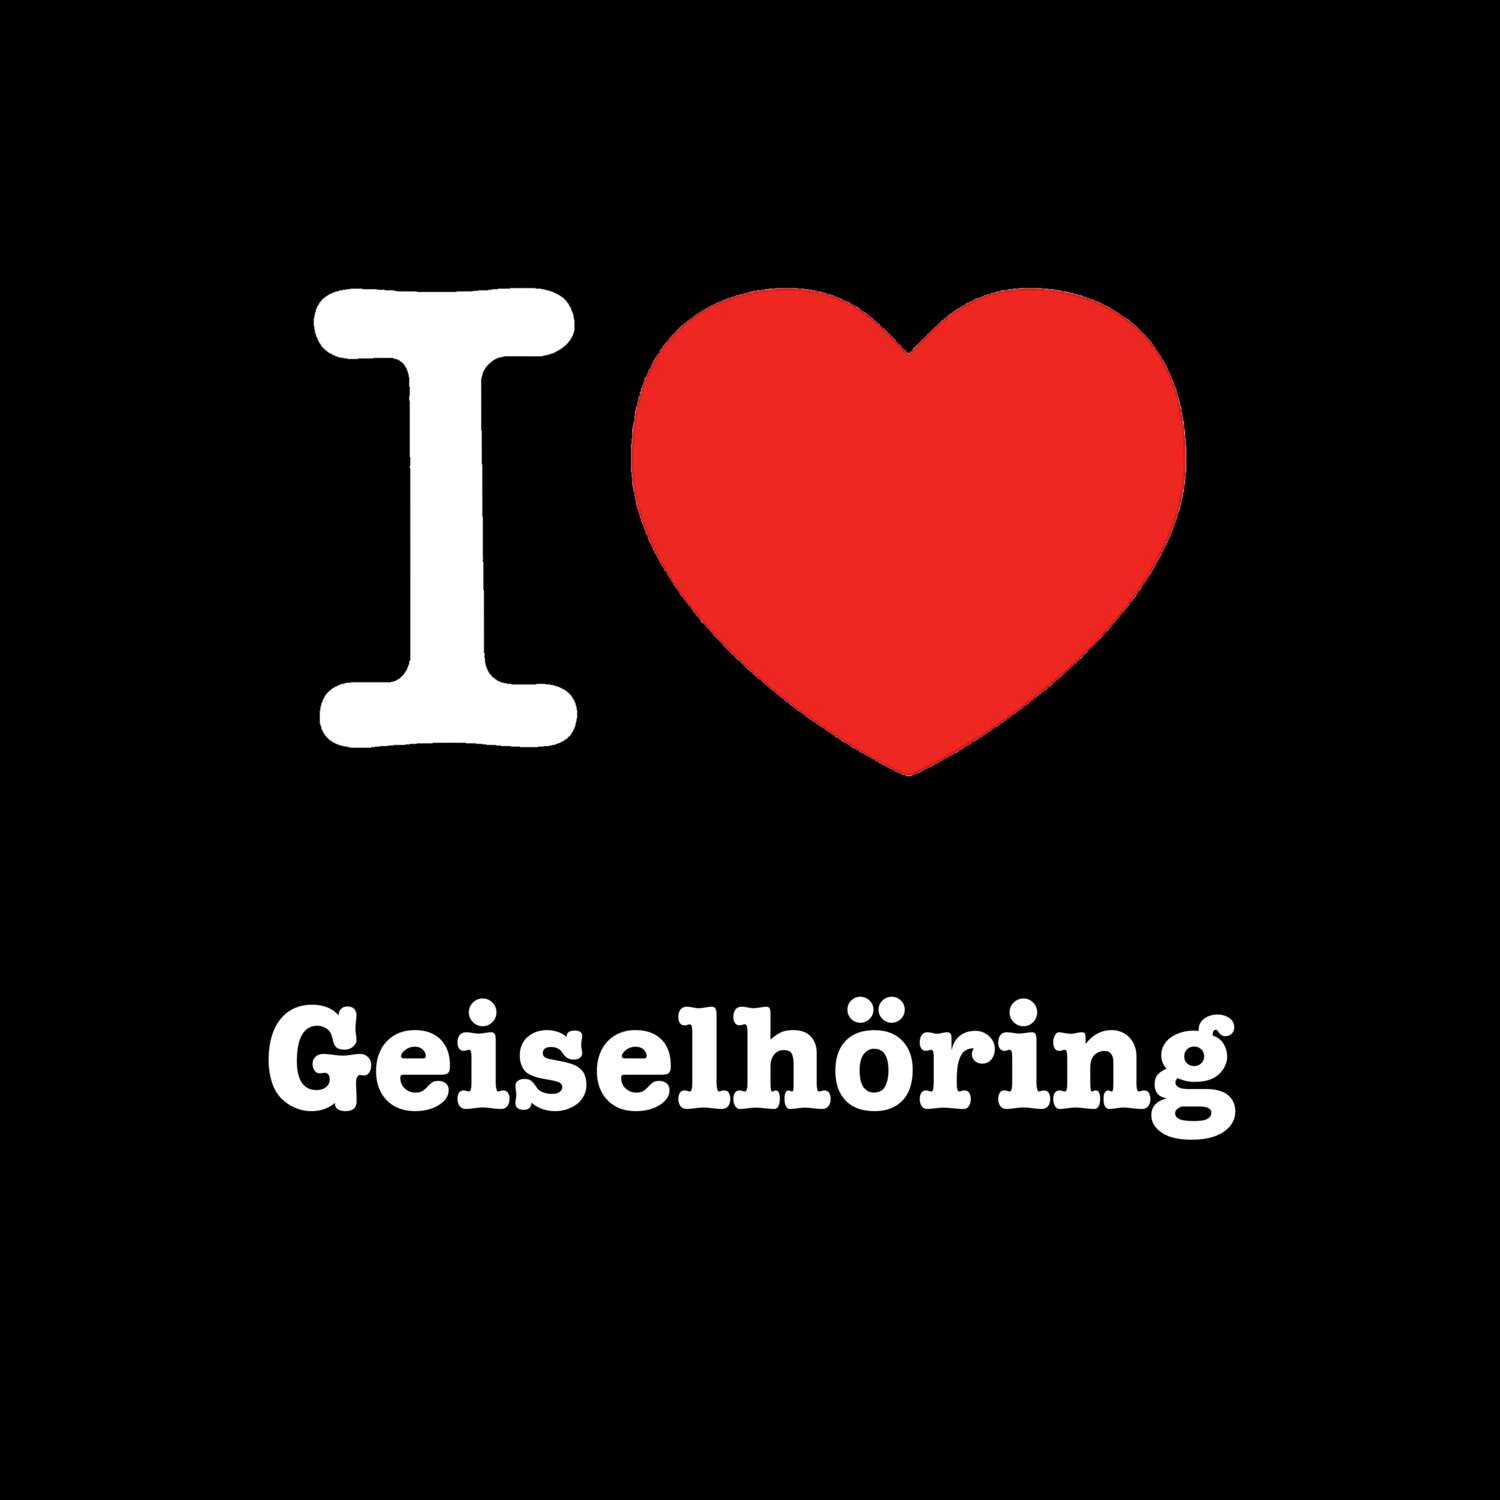 Geiselhöring T-Shirt »I love«